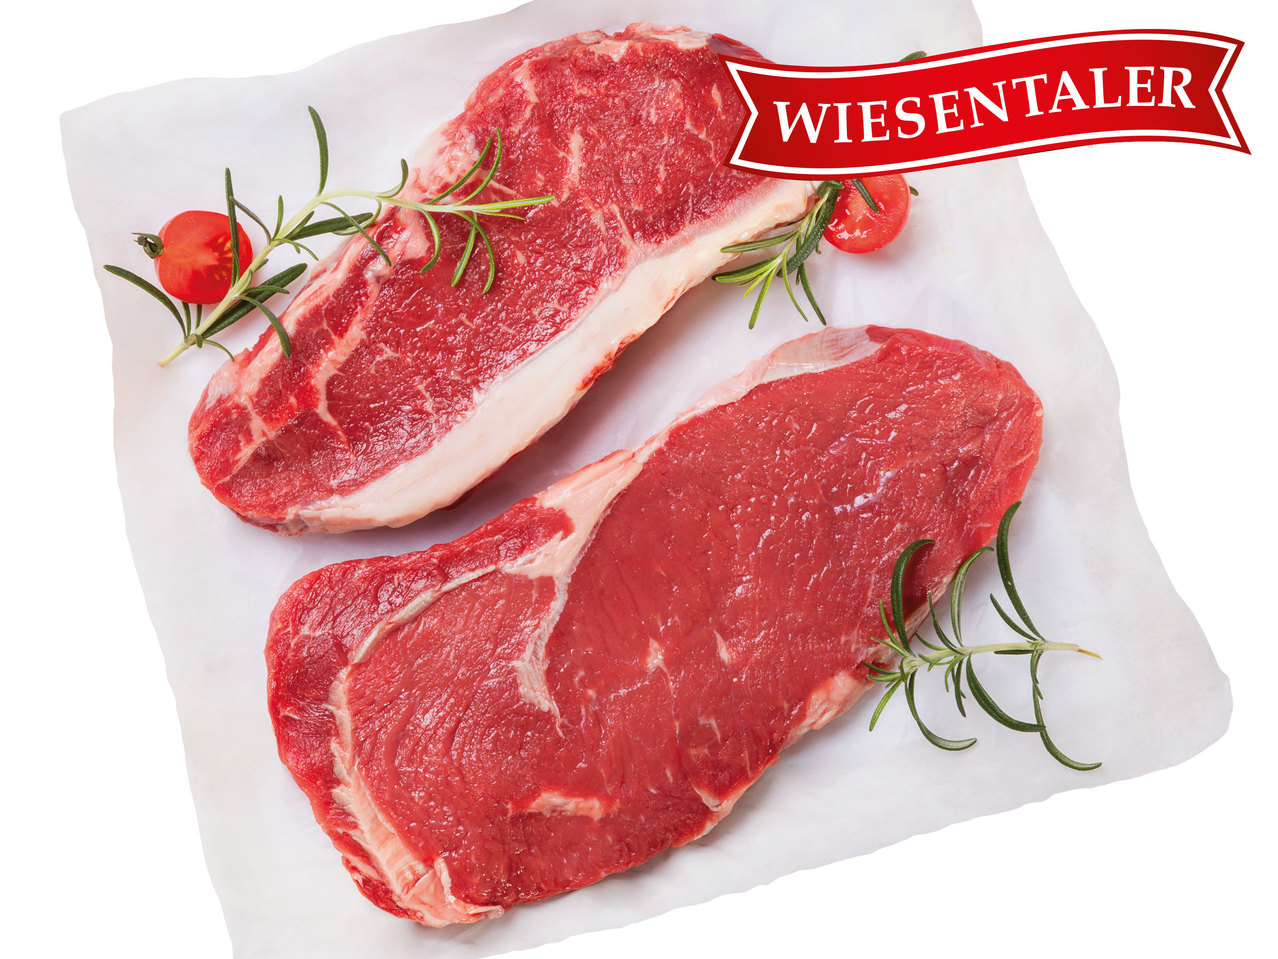 WIESENTALER Frisches österreichisches Rumpsteak/Rib-Eye-Steak